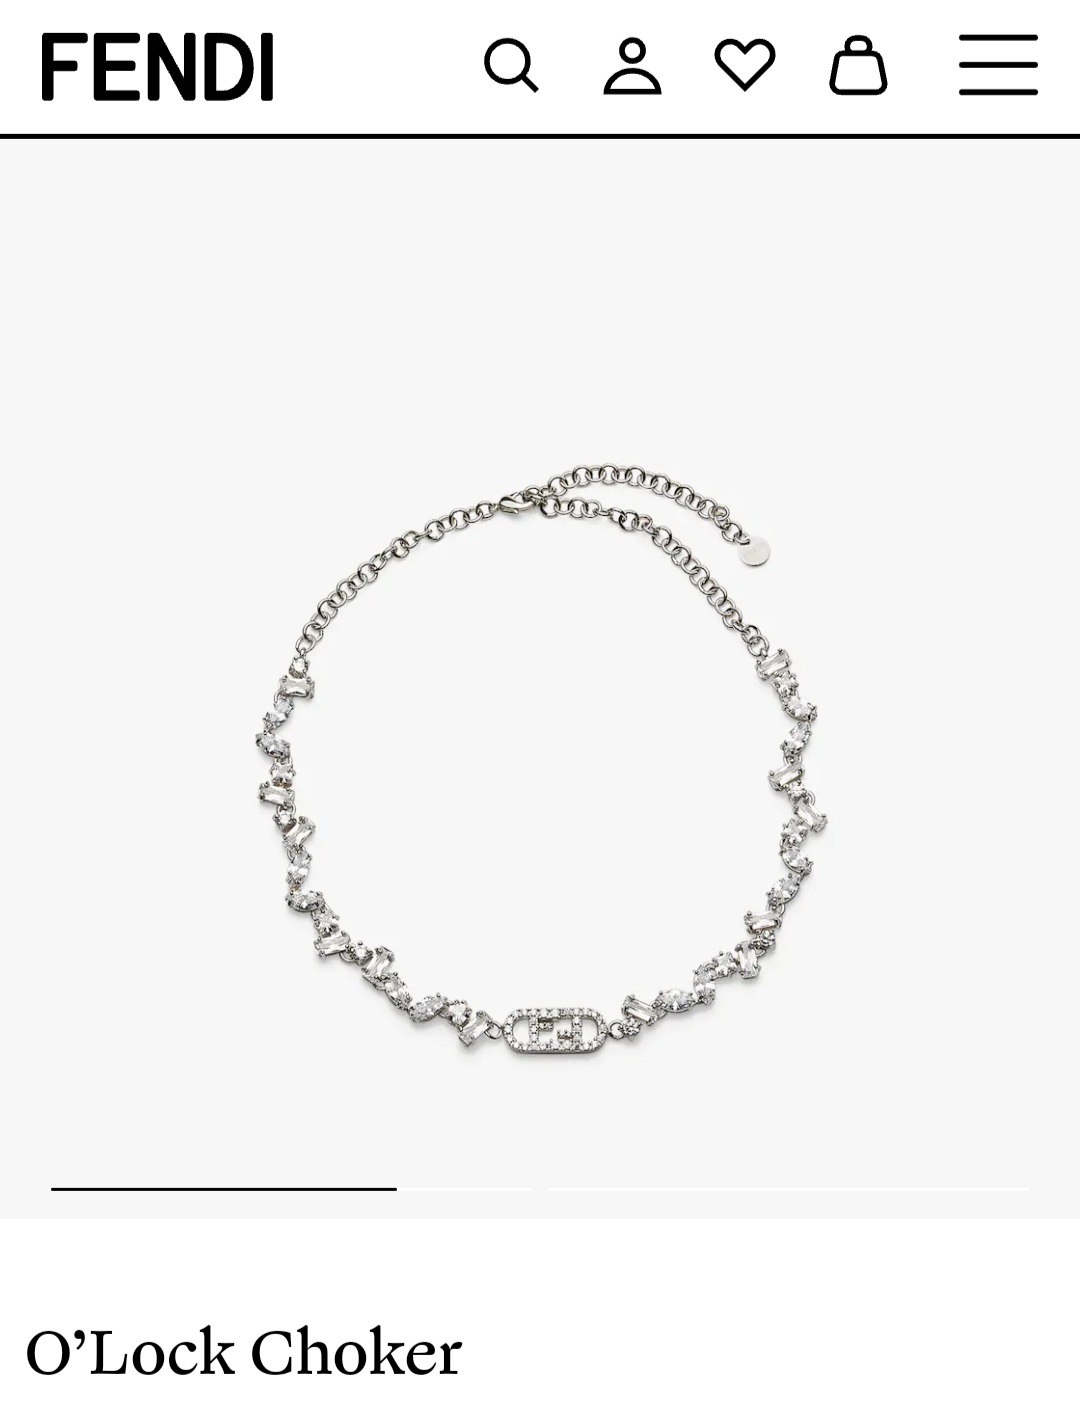 Fendi O’Lock choker necklace